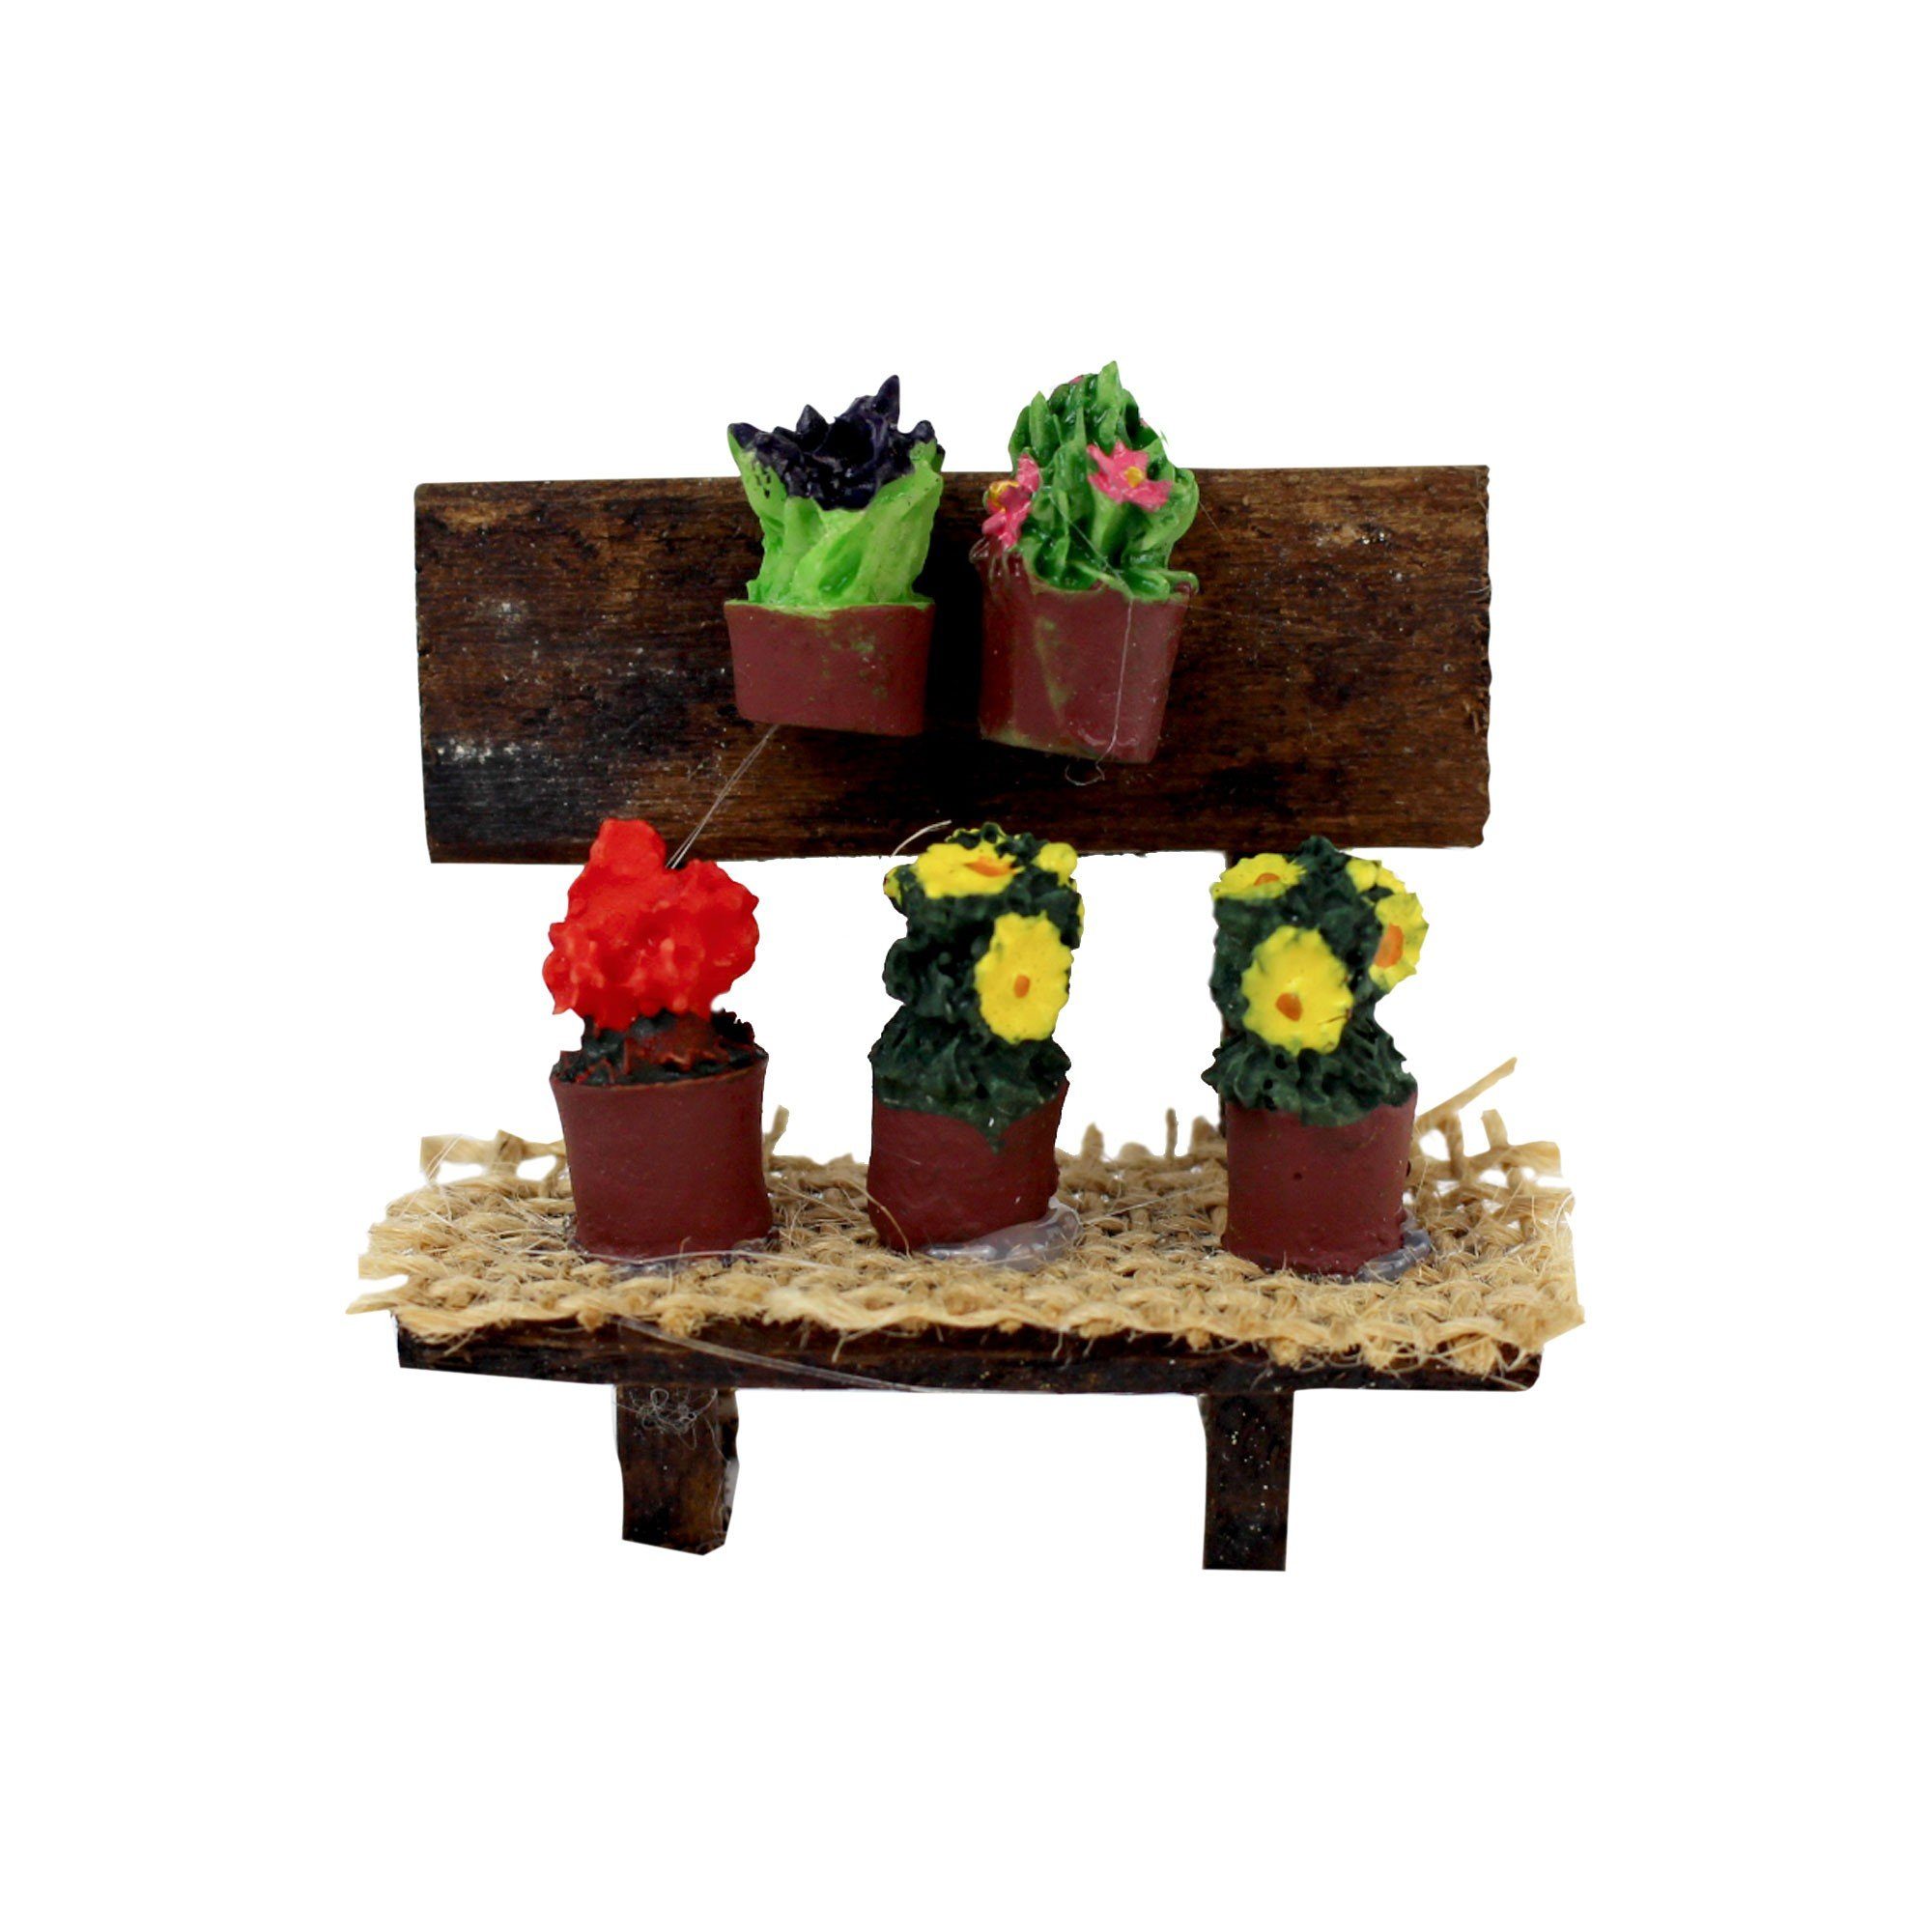 Krippen-Zubehör mit gemacht mit Blumen liebe mitienda Marktstand Krippenzubehör natur